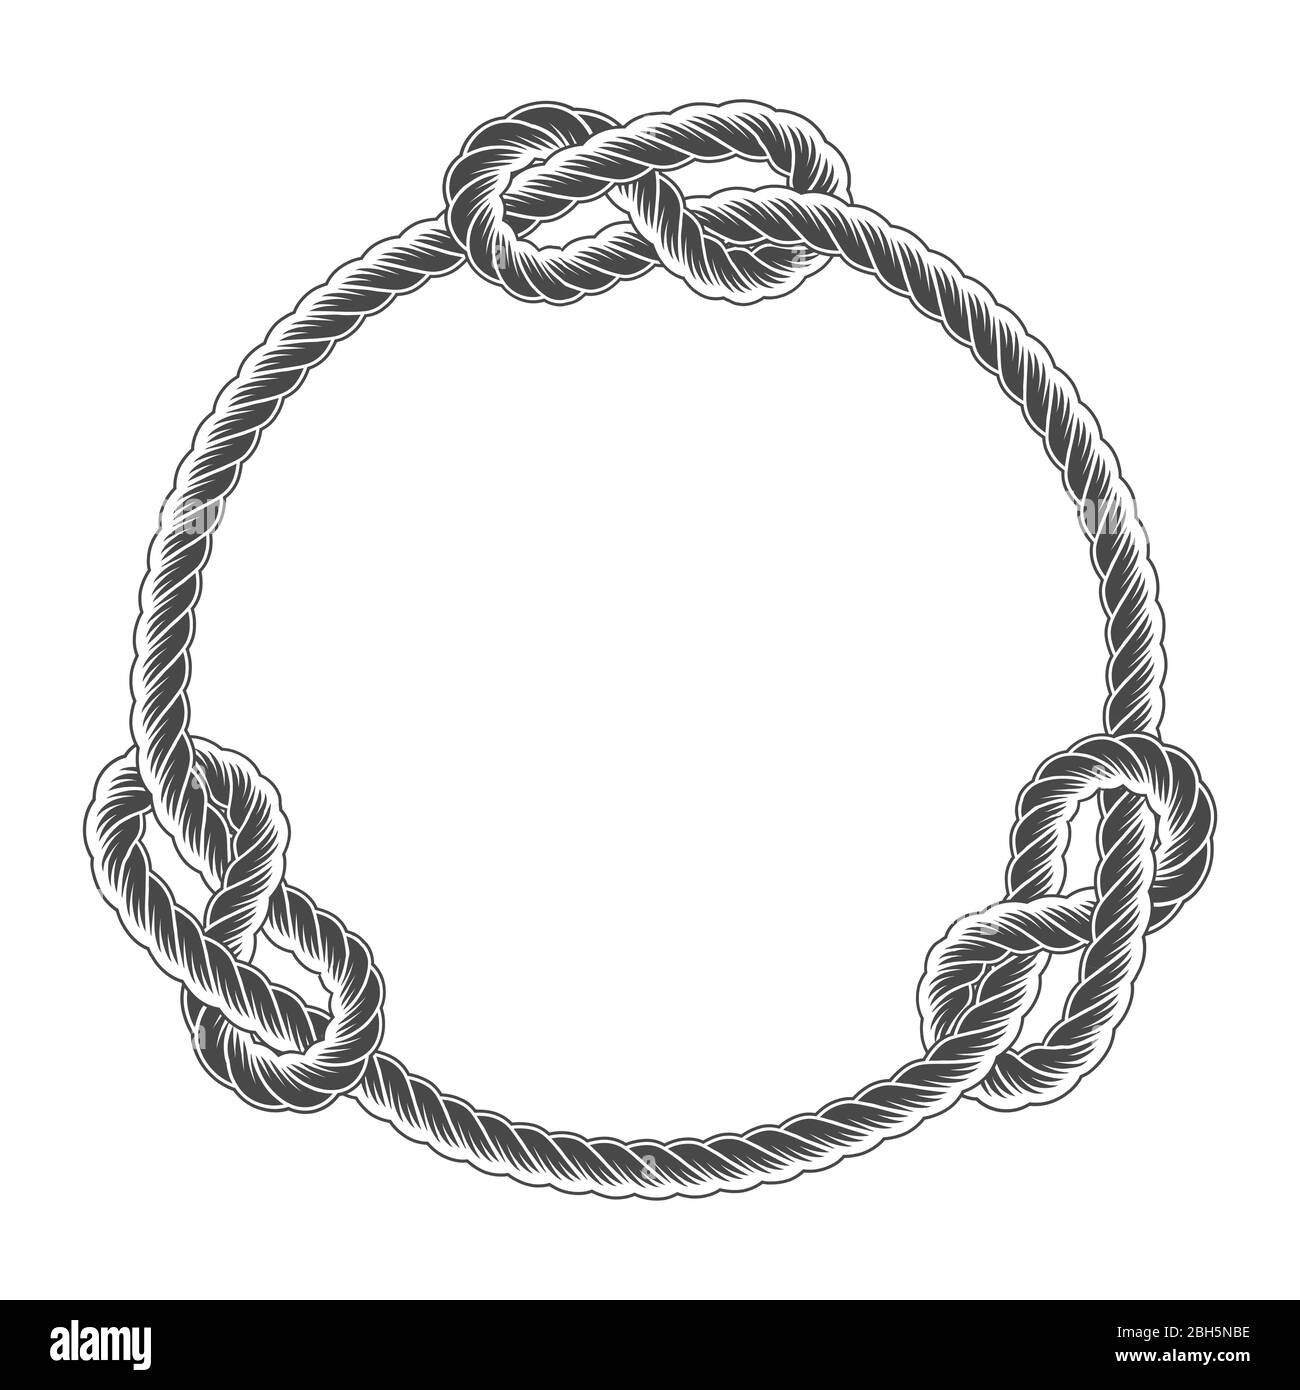 Seil Kreis Rahmen mit Knoten, einfache Stil Linie Seil, marine Grenze  Stock-Vektorgrafik - Alamy